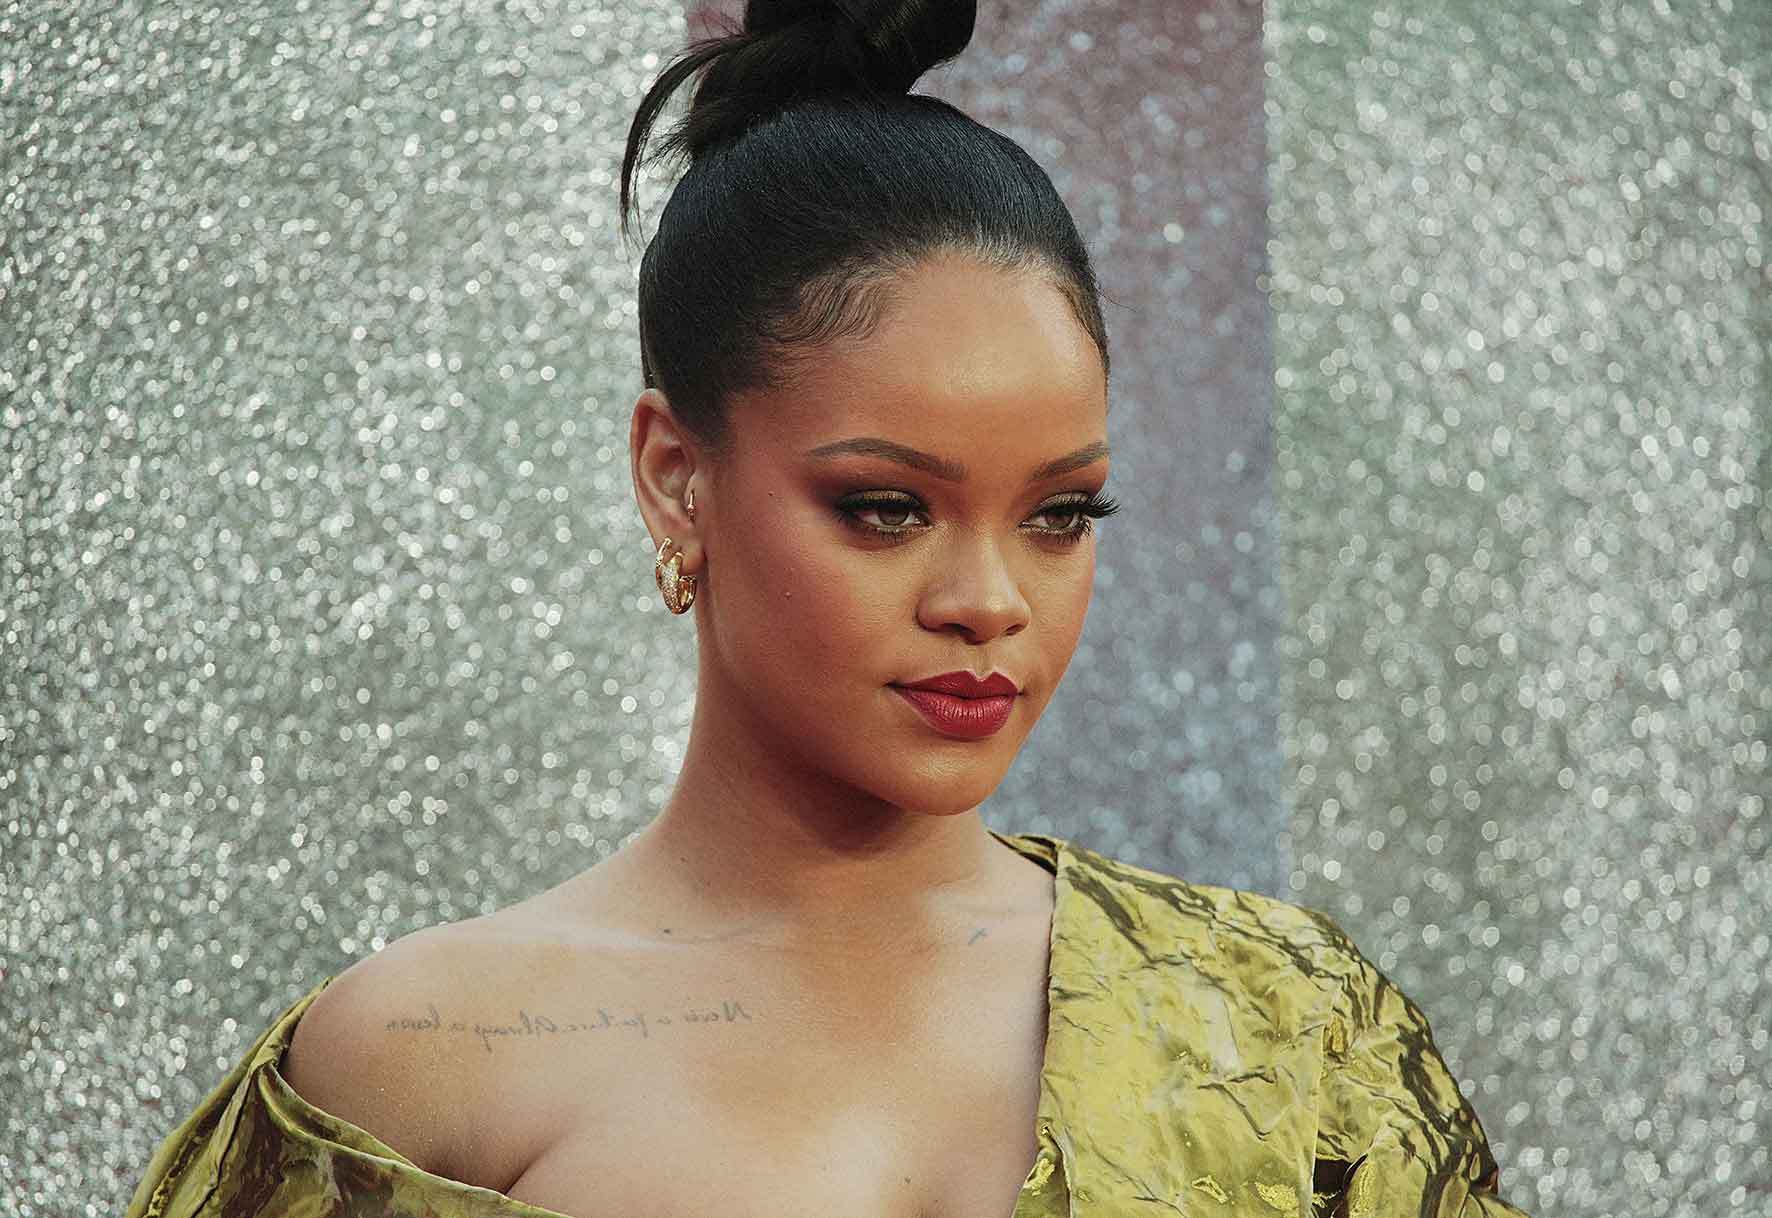 Rihanna perd 1 milió de dòlars per un assalt a plena llum del dia a Los Angeles